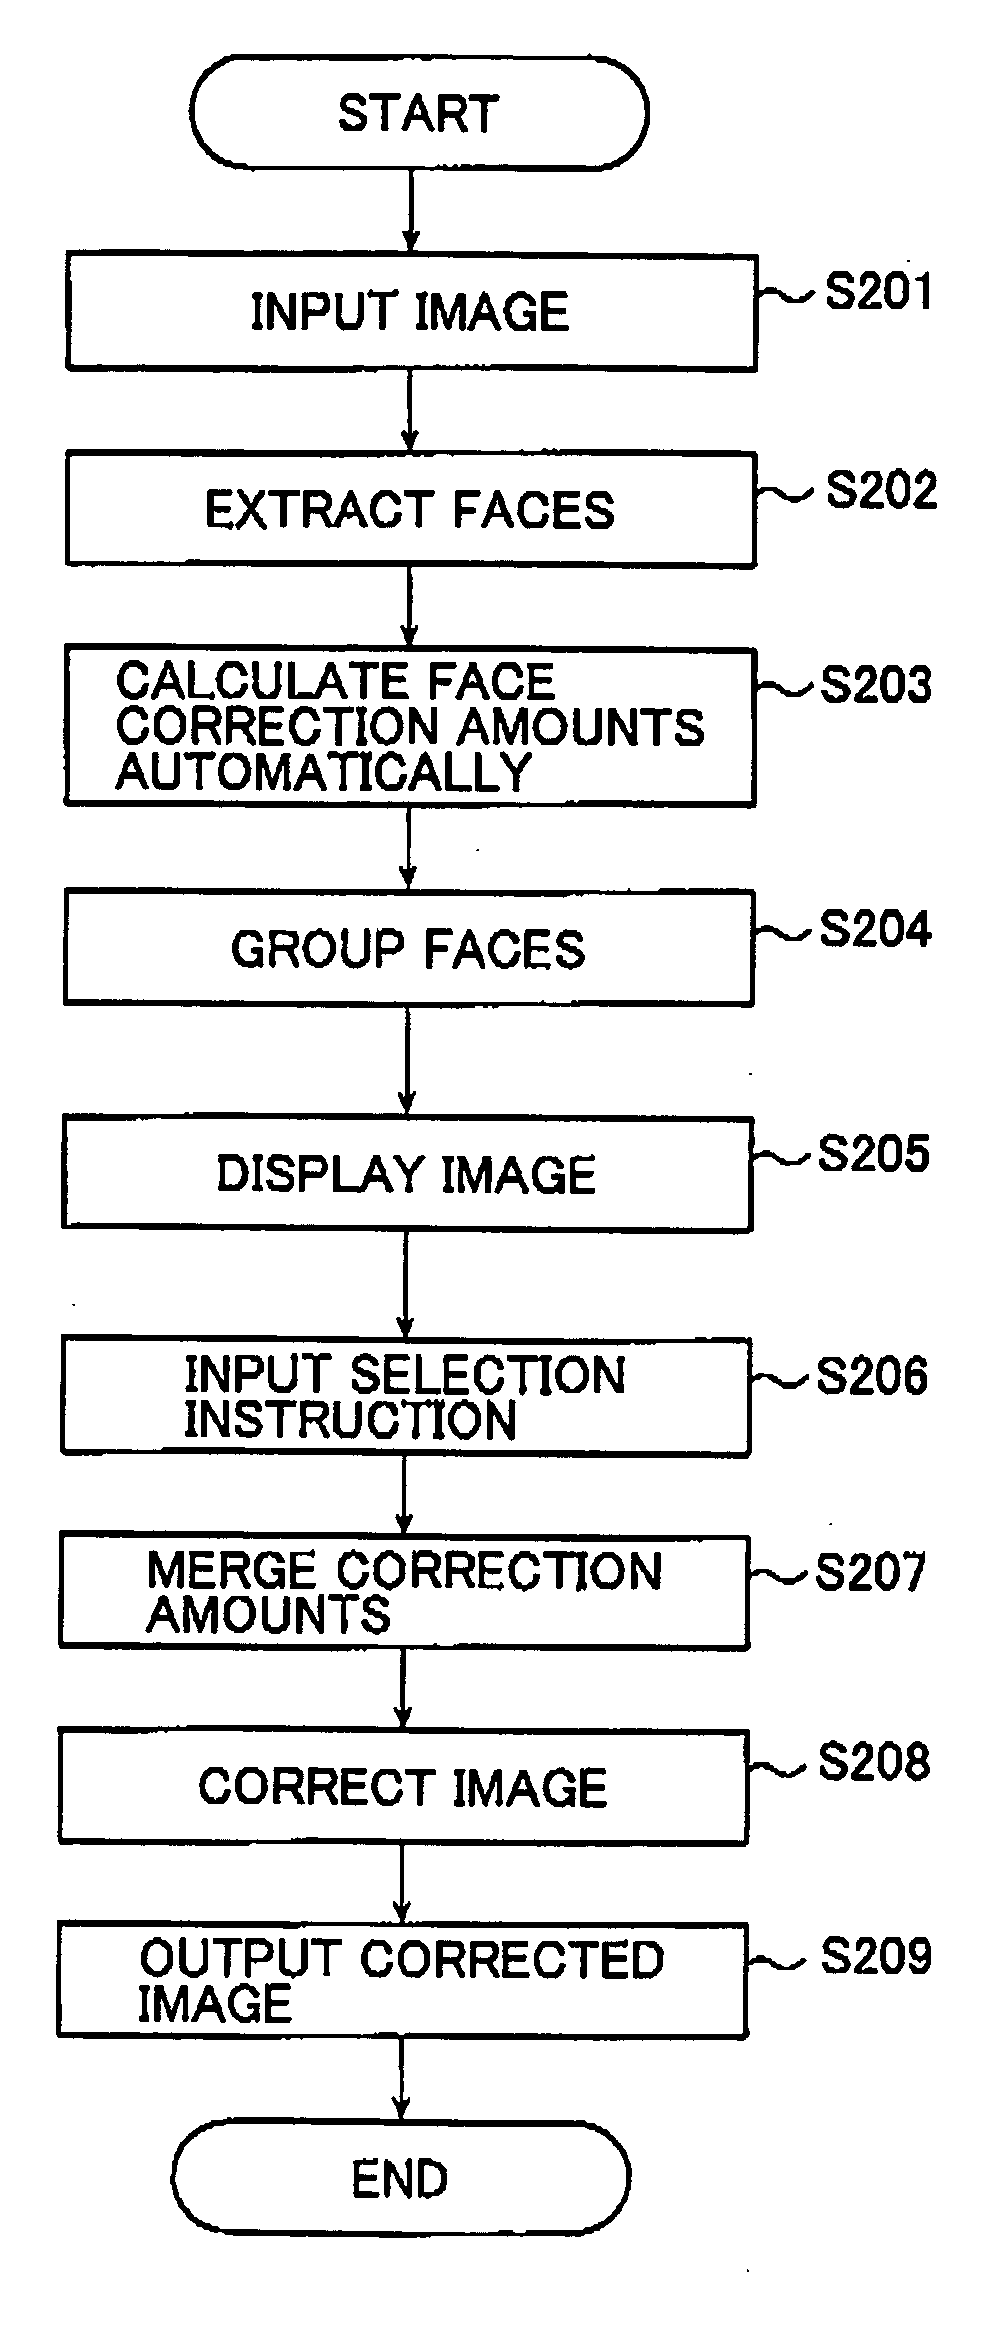 Image correcting method and image correcting system